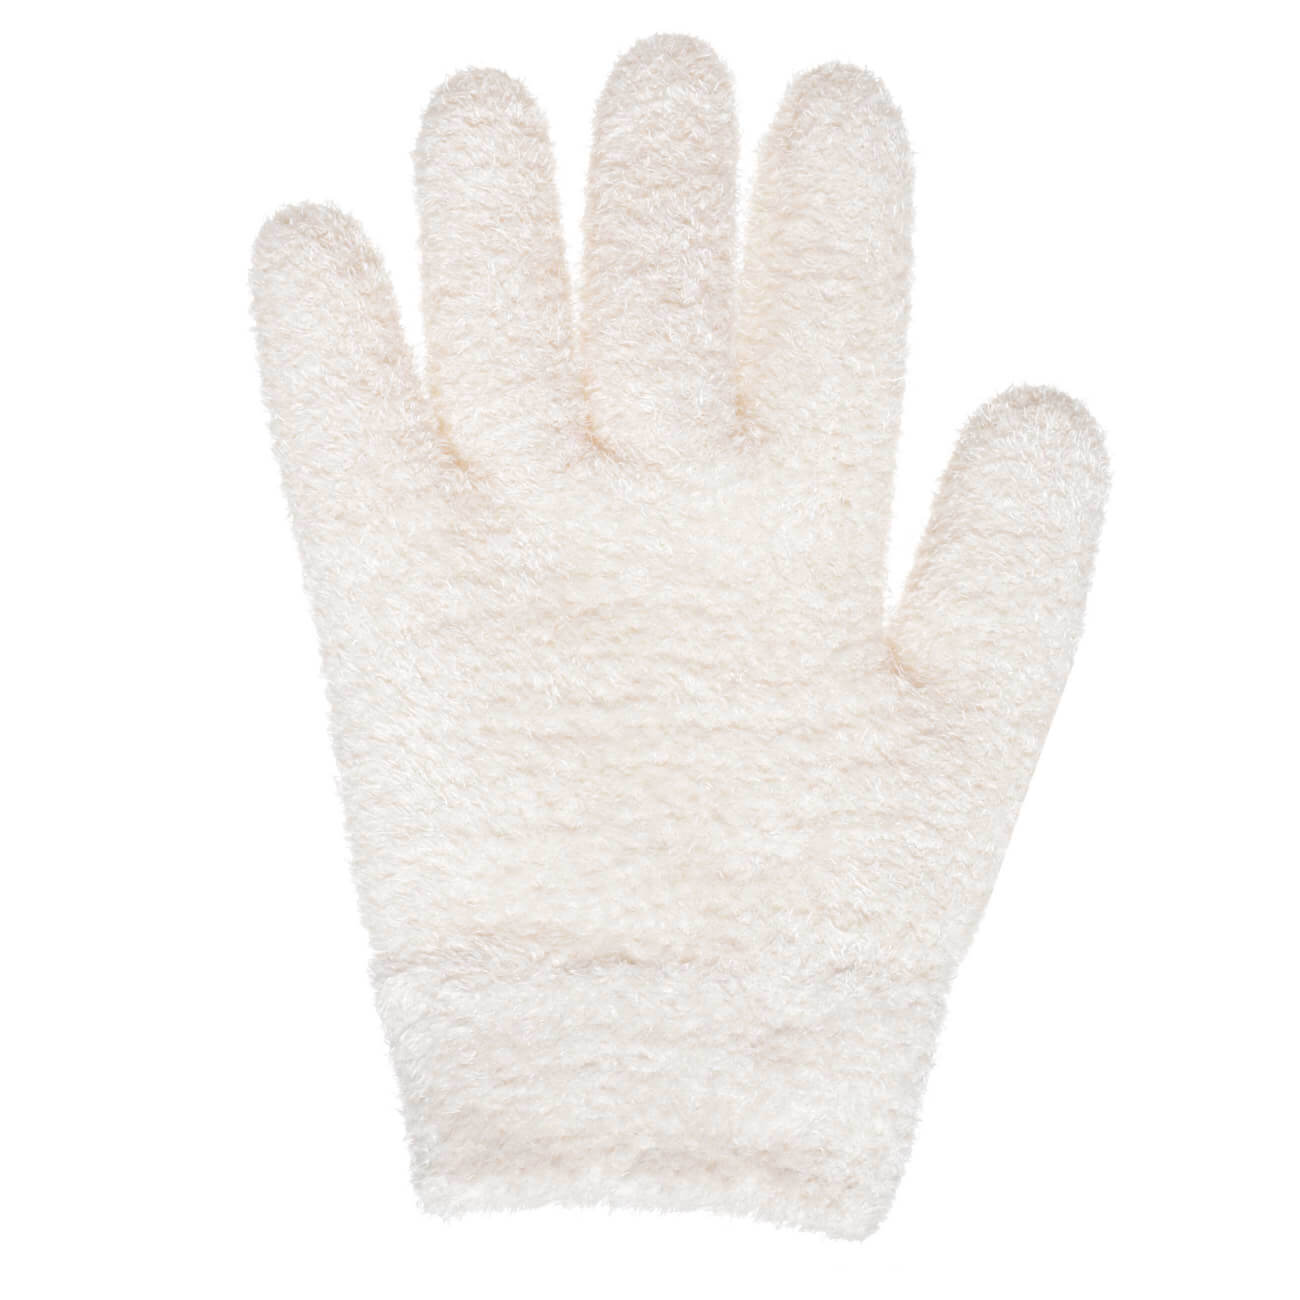 СПА-перчатки гелевые, 20 см, многоразовые, полиэстер, молочные, Spa корректоры гелевые olvist для пальцев ног